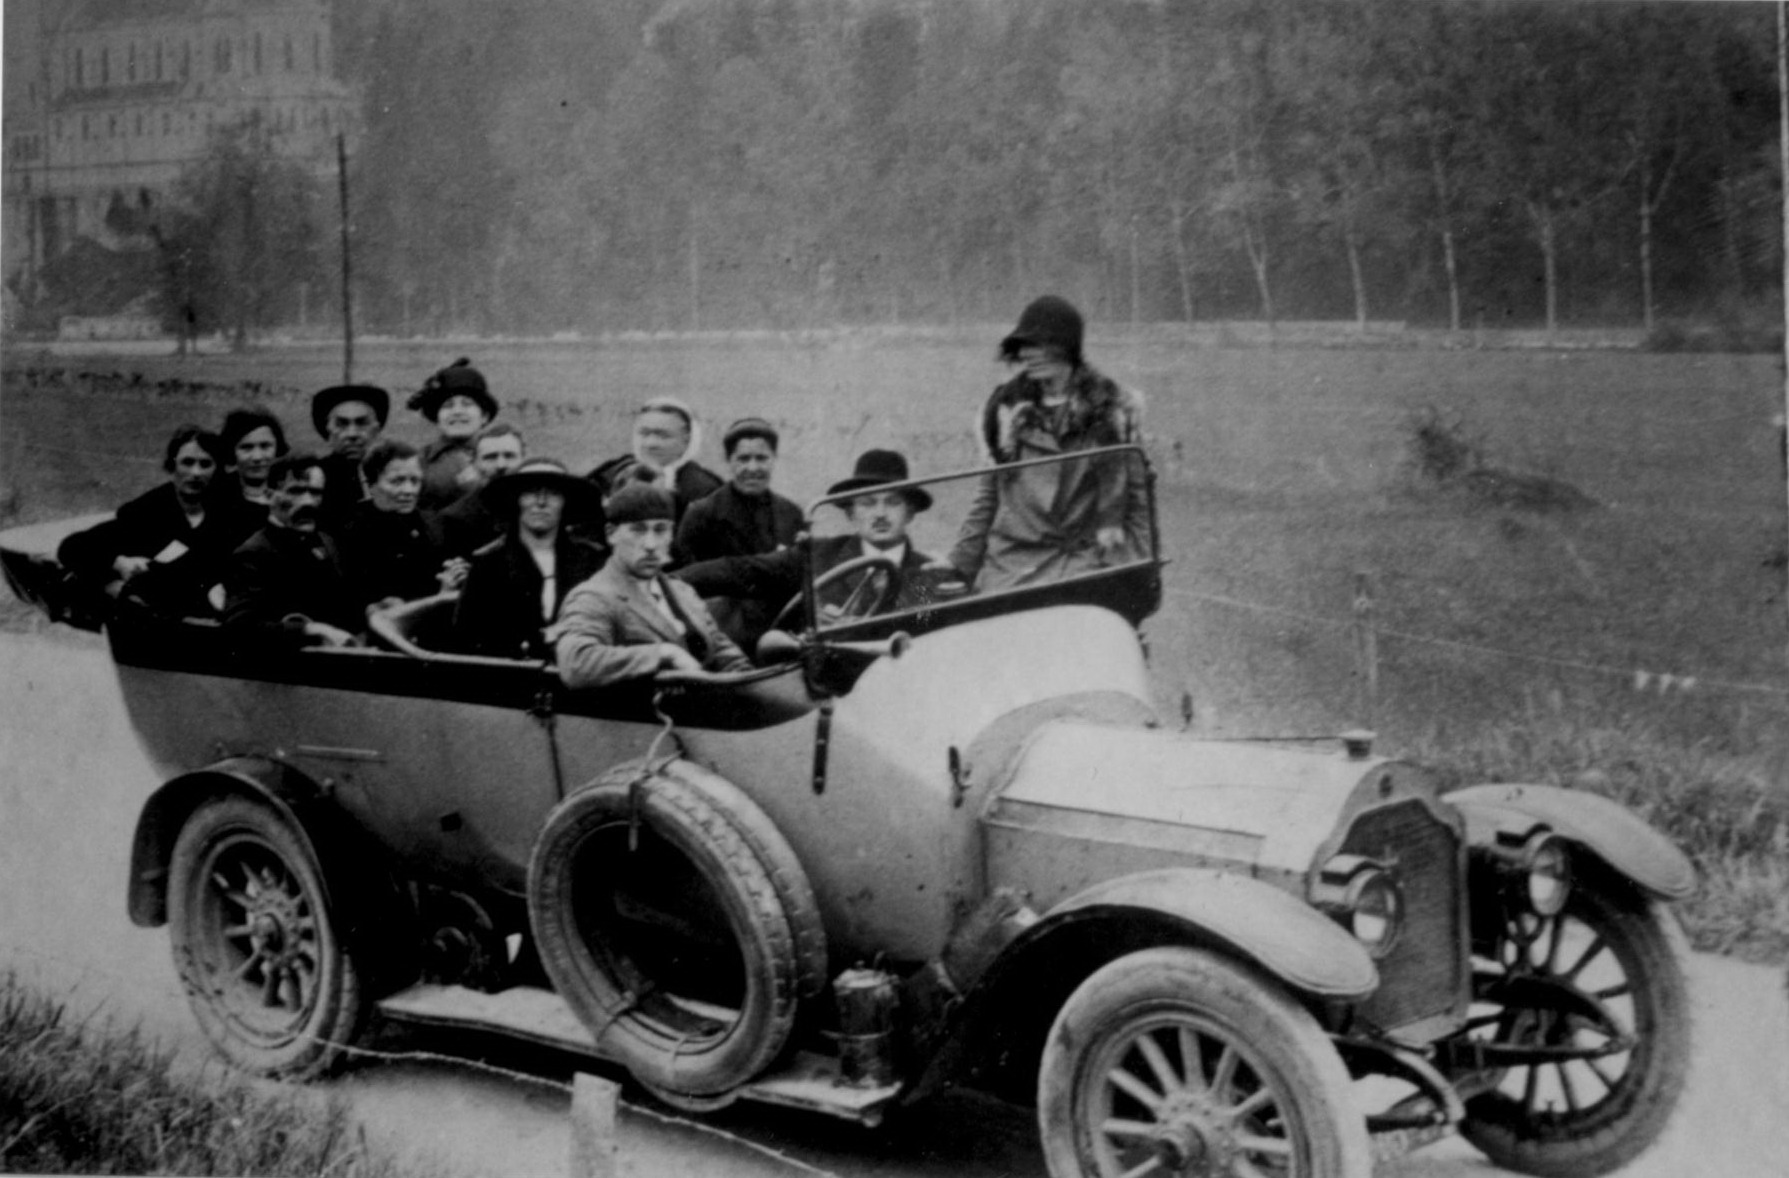 Véhicule de transport collectif, au milieu des années 1920